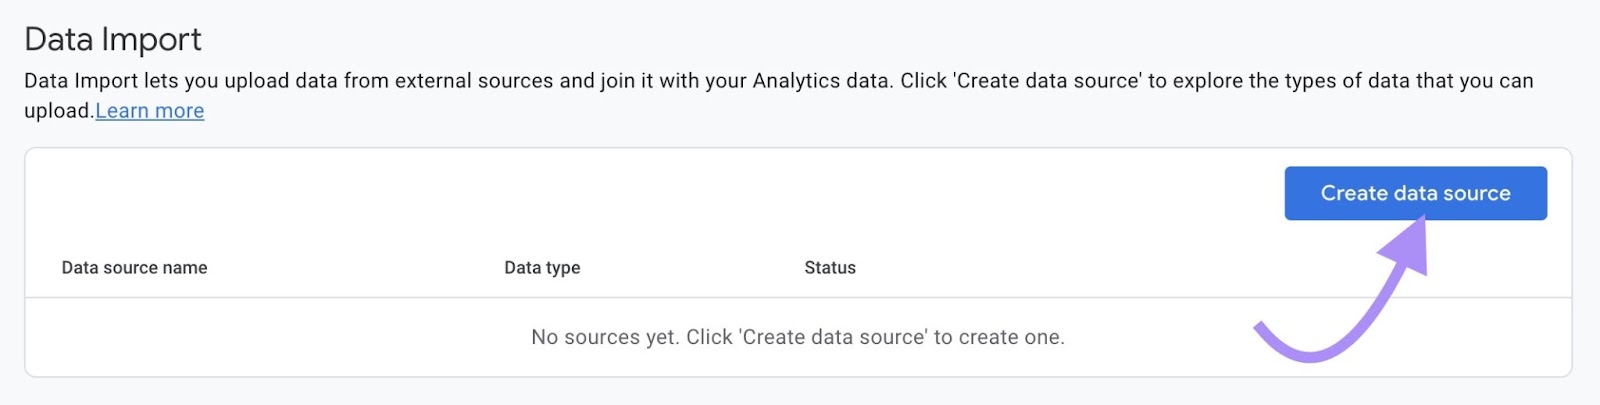 “Create data source" button under "Data Import" window